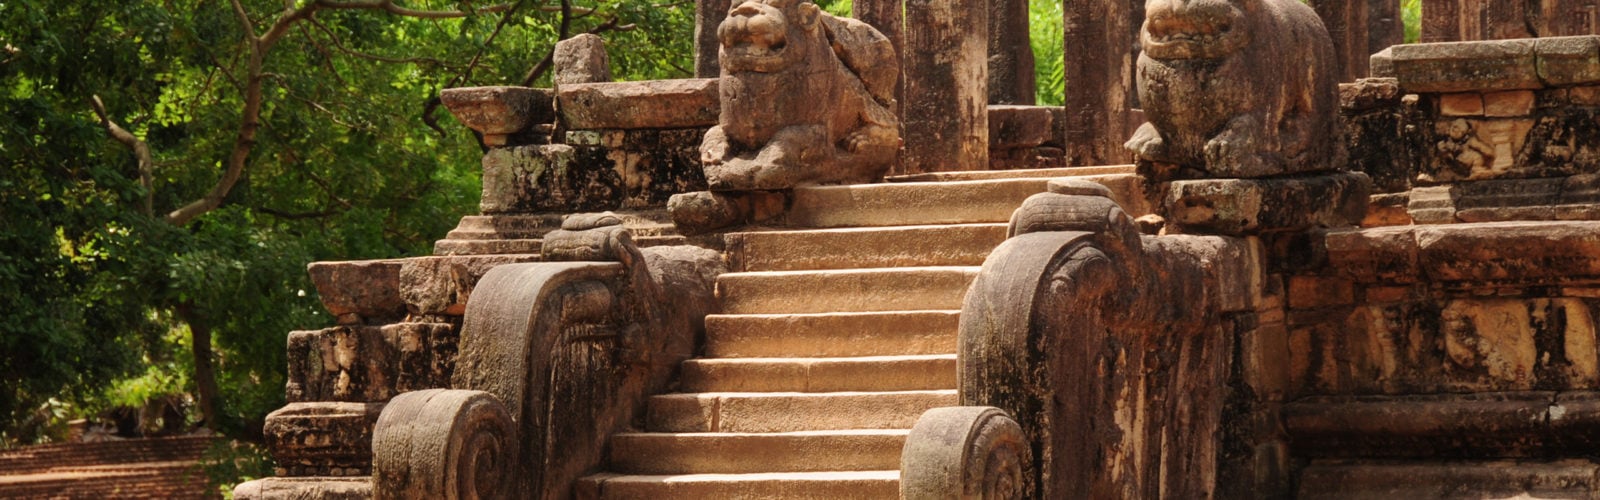 polonnaruwa-sri-lanka